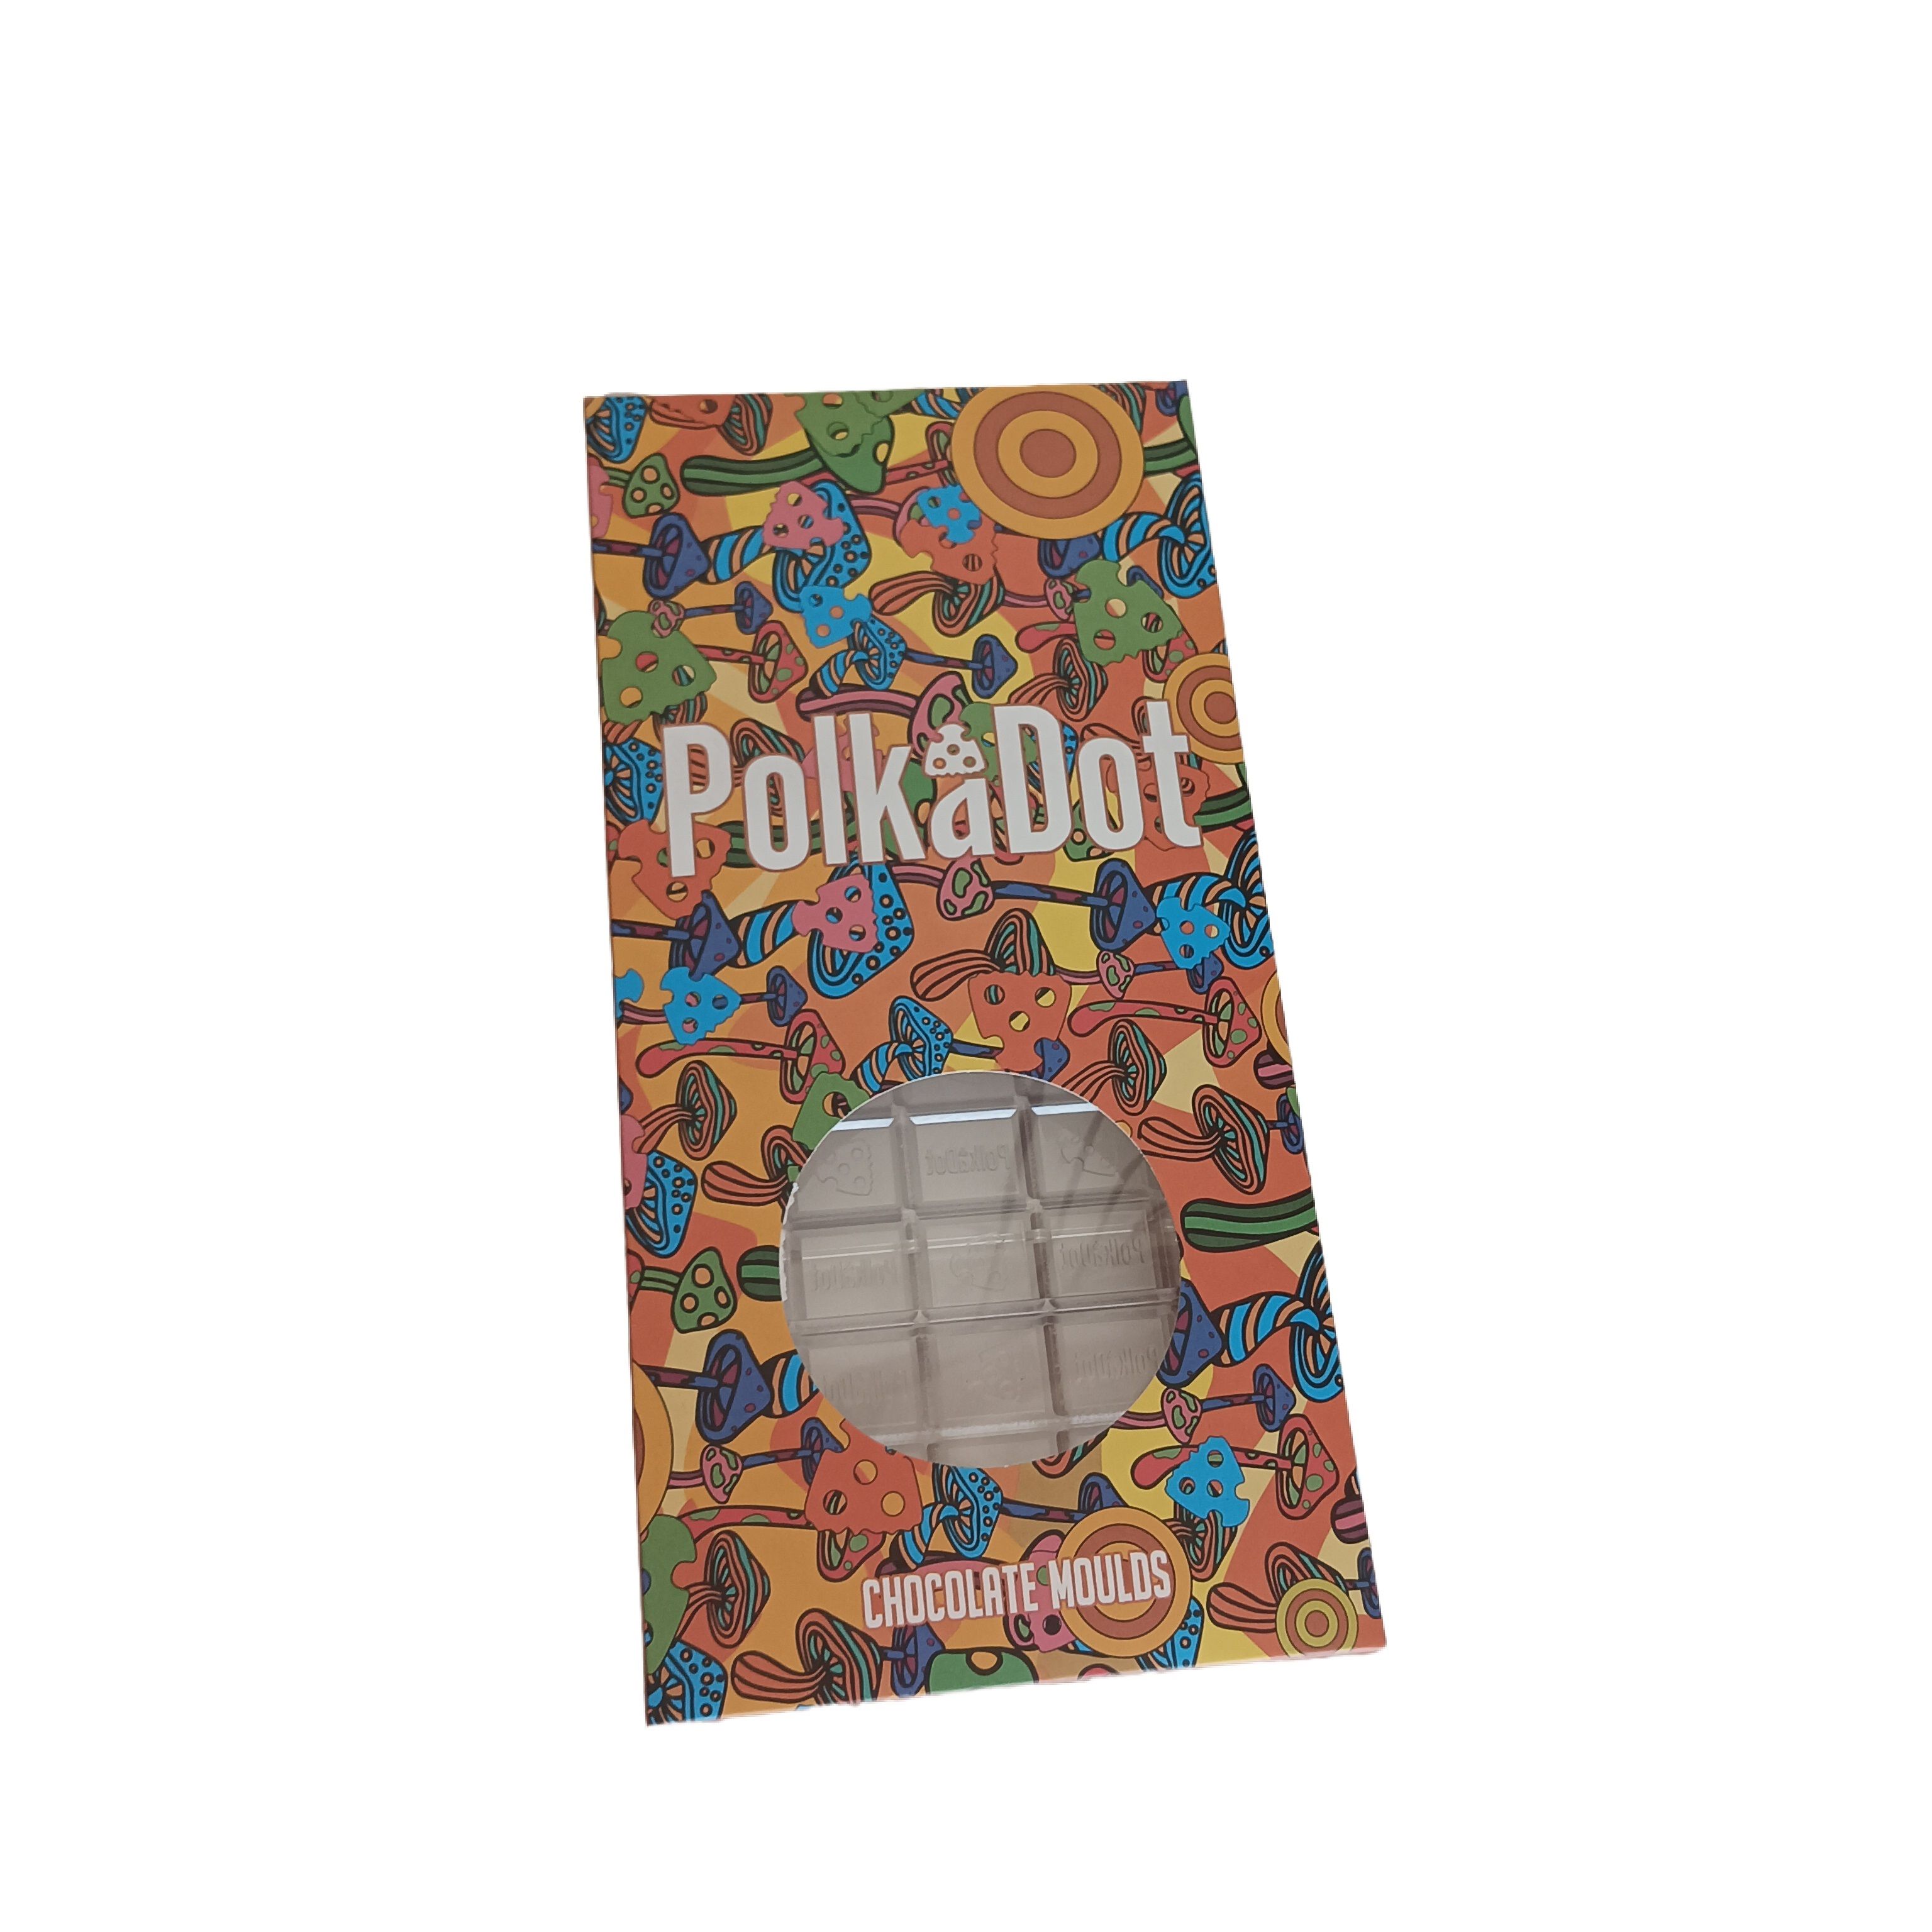 PolkaDot Chocolate Molds 15pc chocolate bar mold-Polkadot